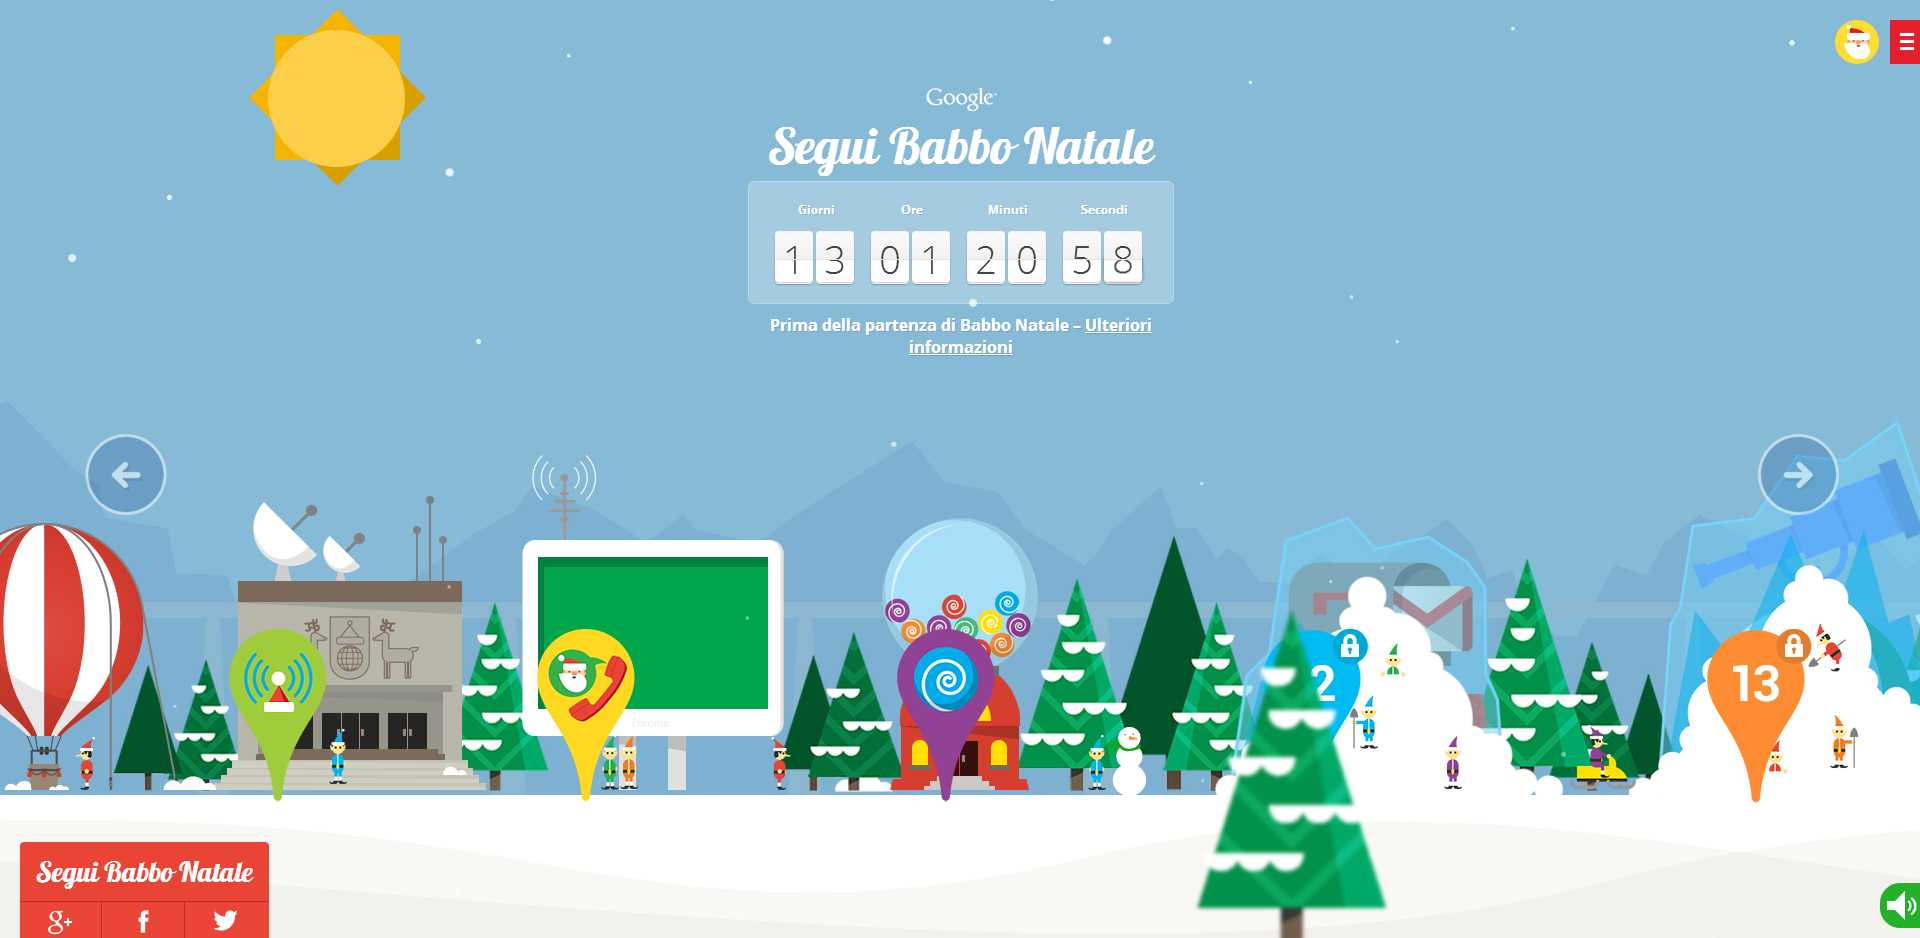 Babbo Natale Google.Giochi Di Babbo Natale Gratis Con Google